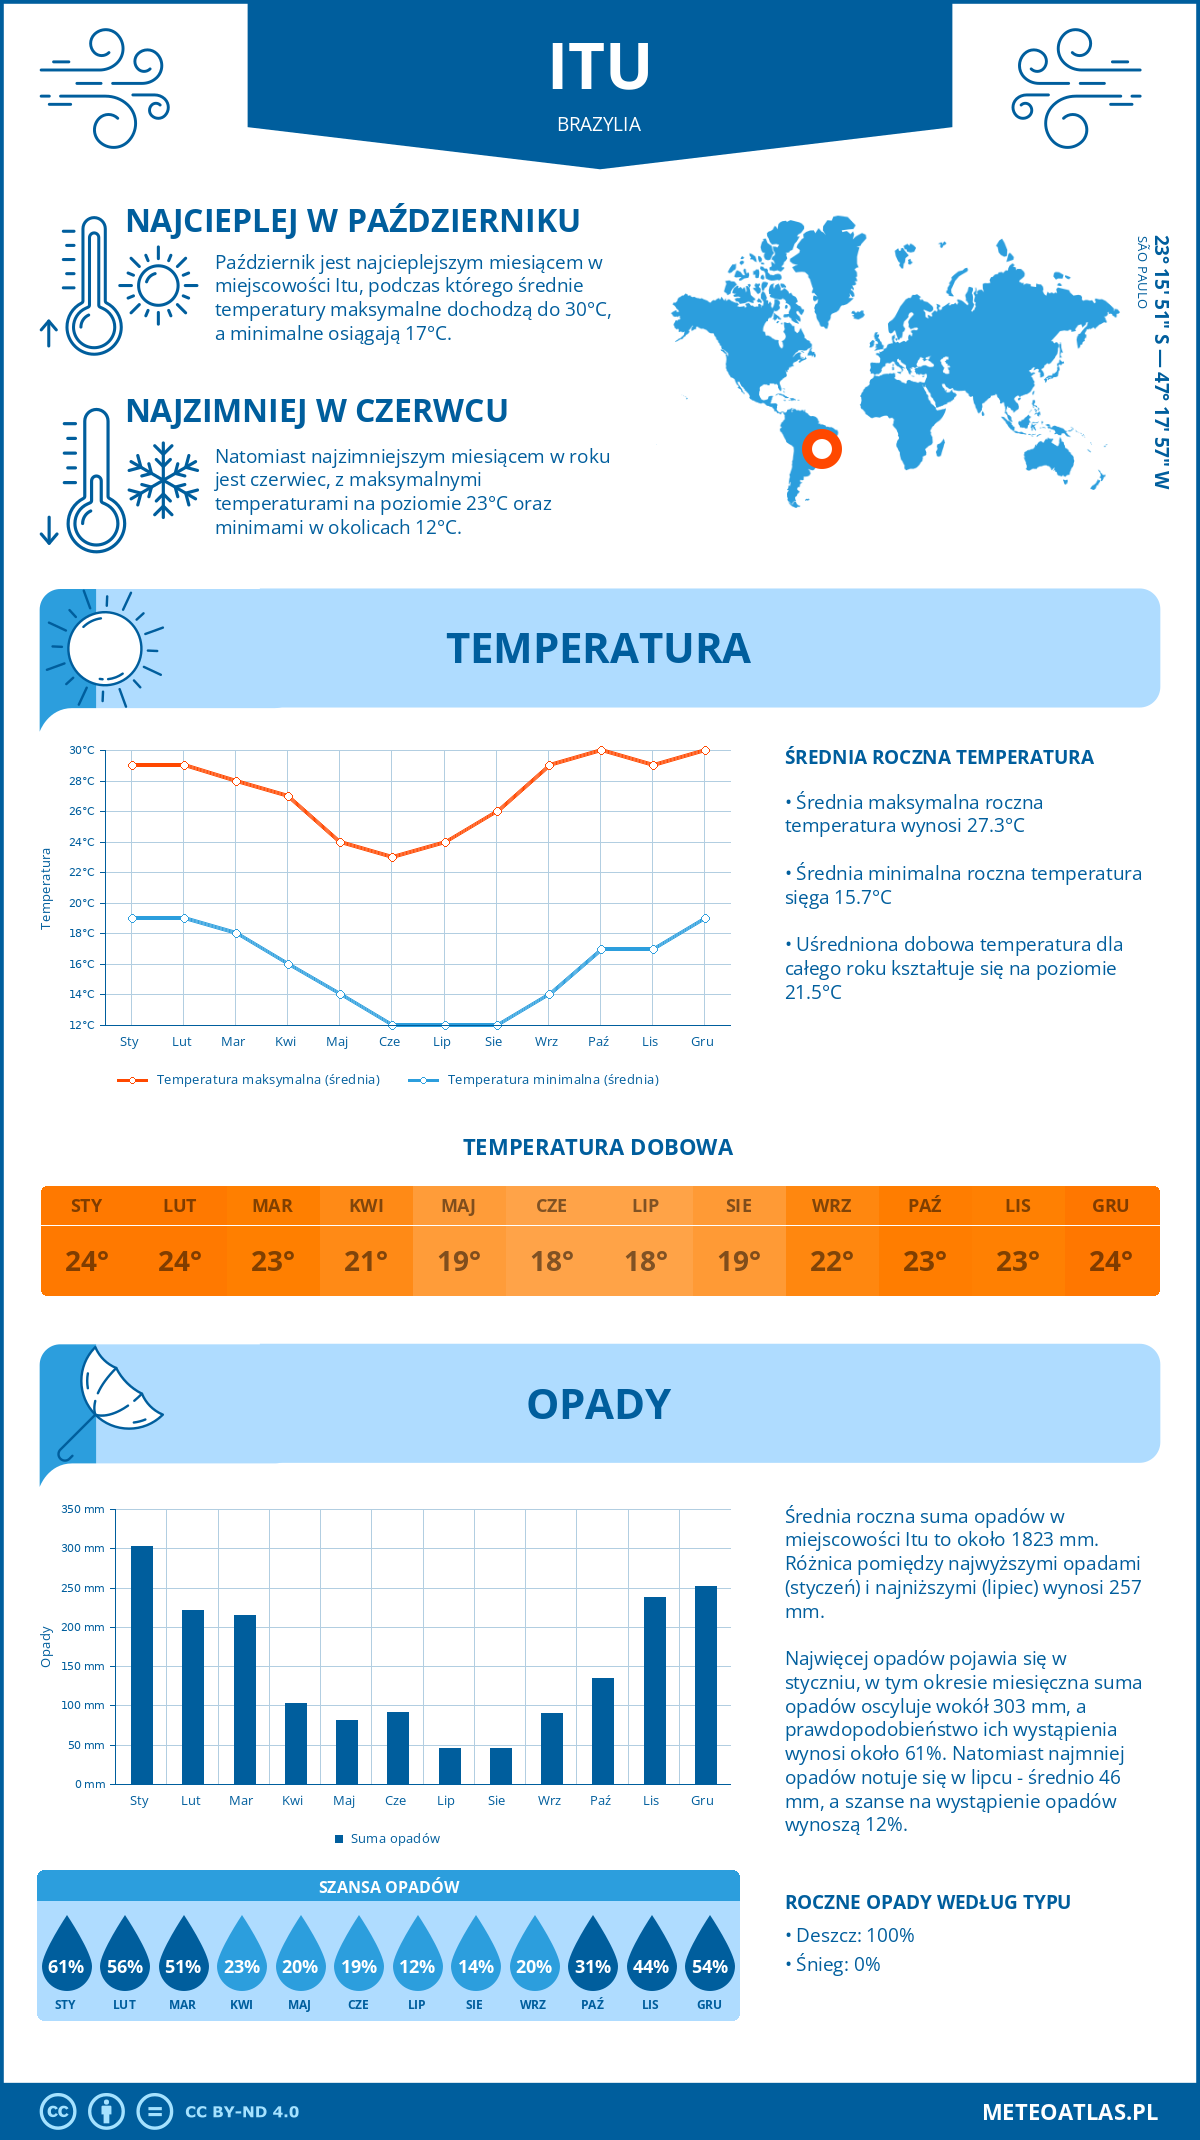 Pogoda Itu (Brazylia). Temperatura oraz opady.